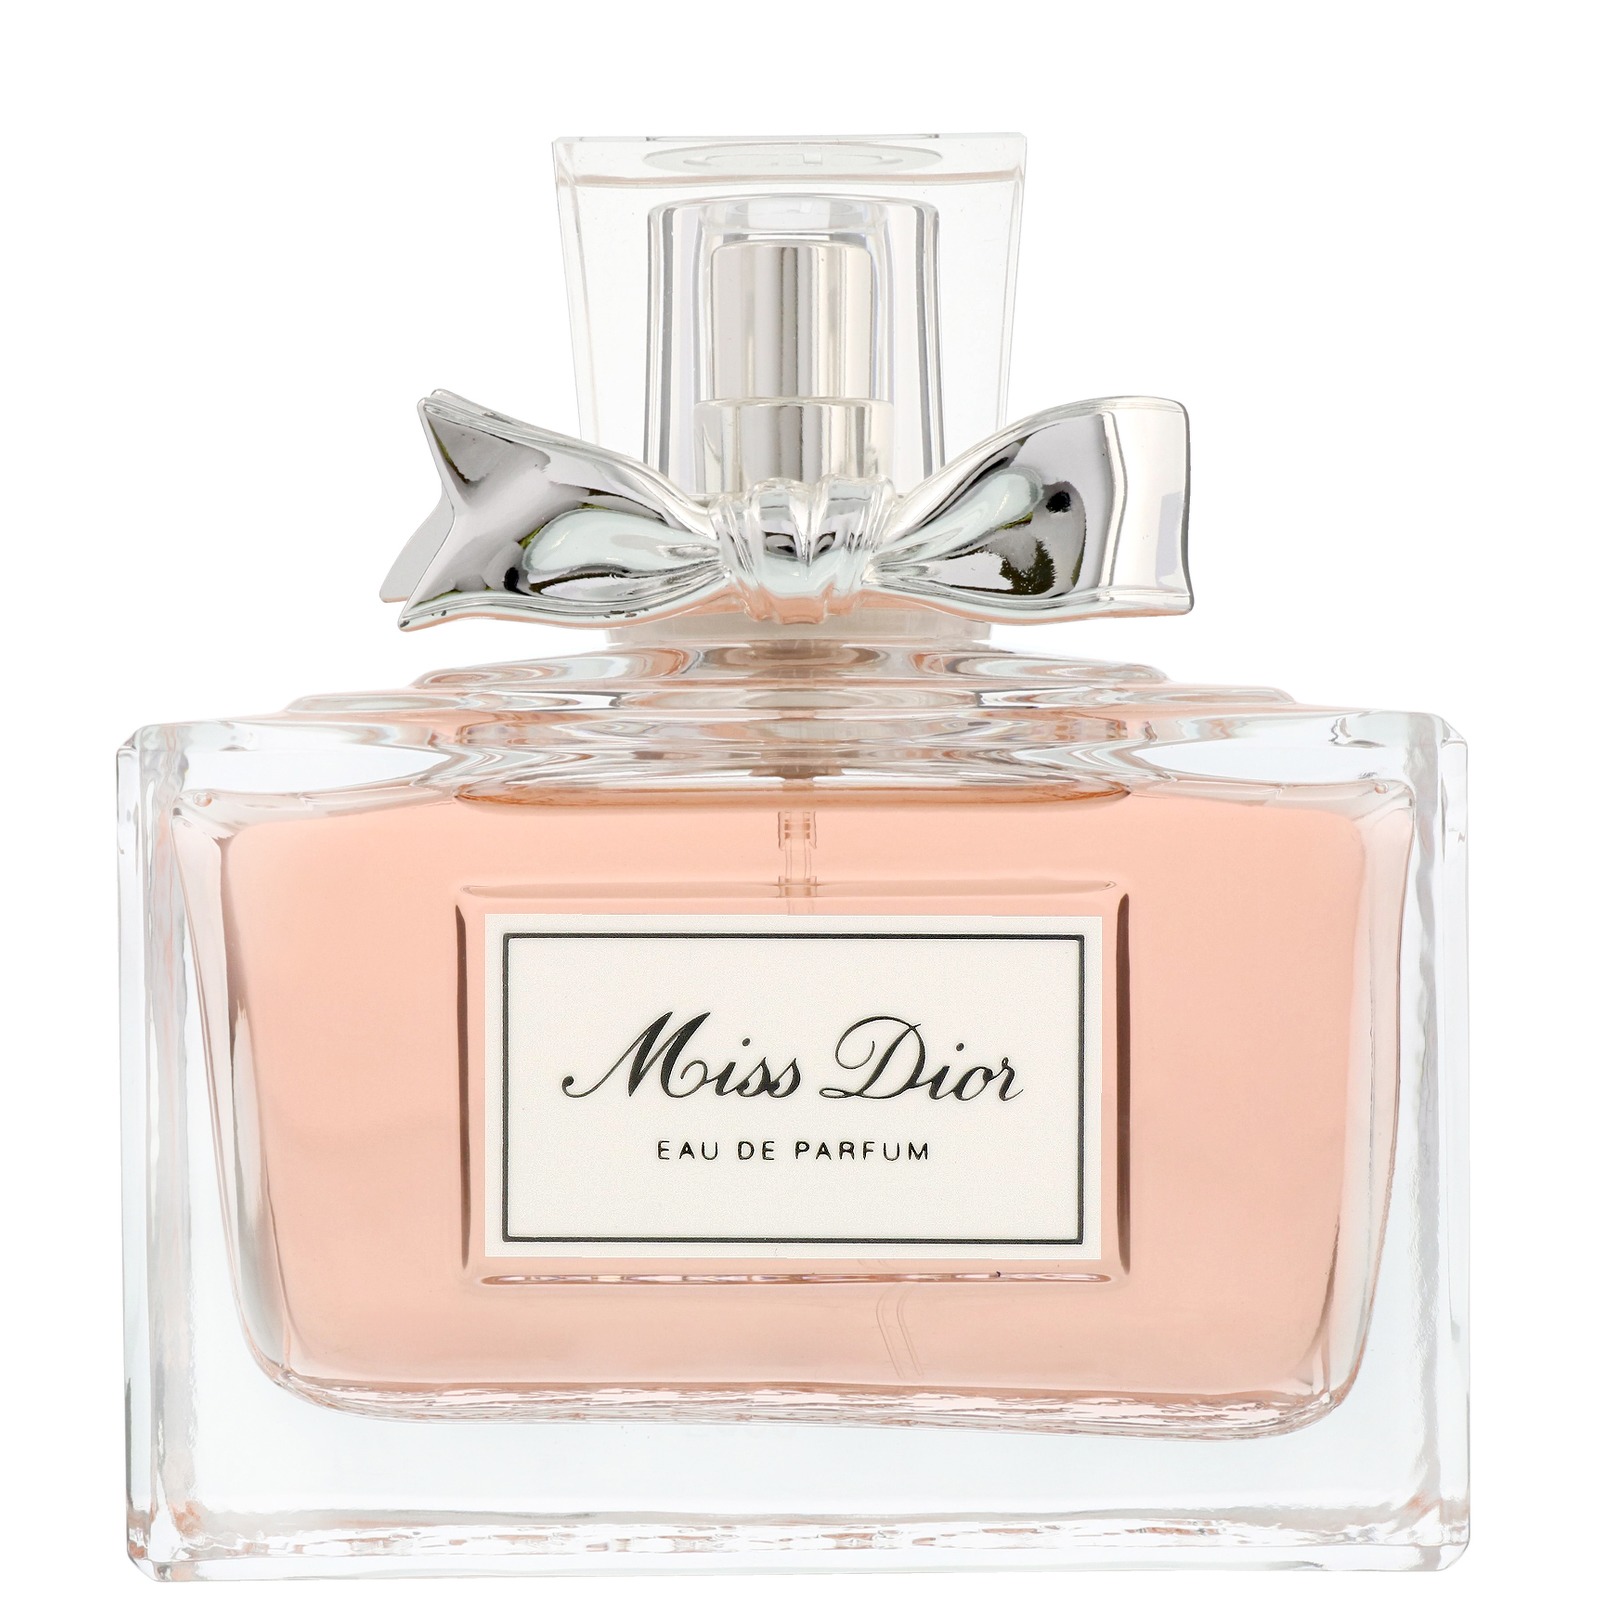 miss dior perfume 100ml